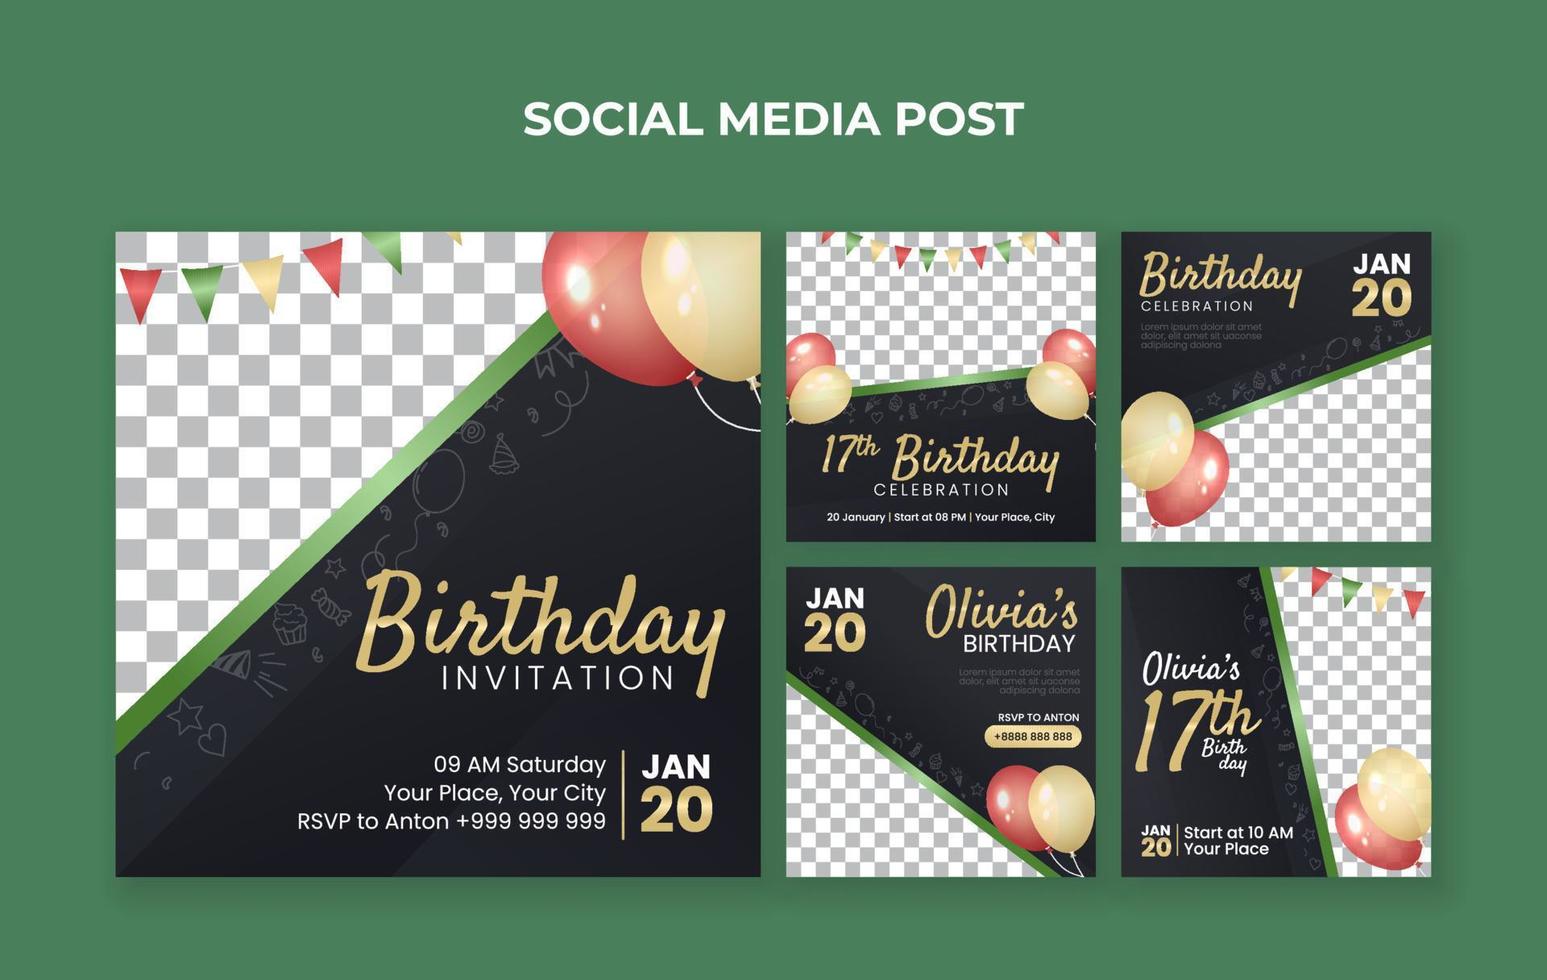 födelsedag inbjudan social media posta mall vektor